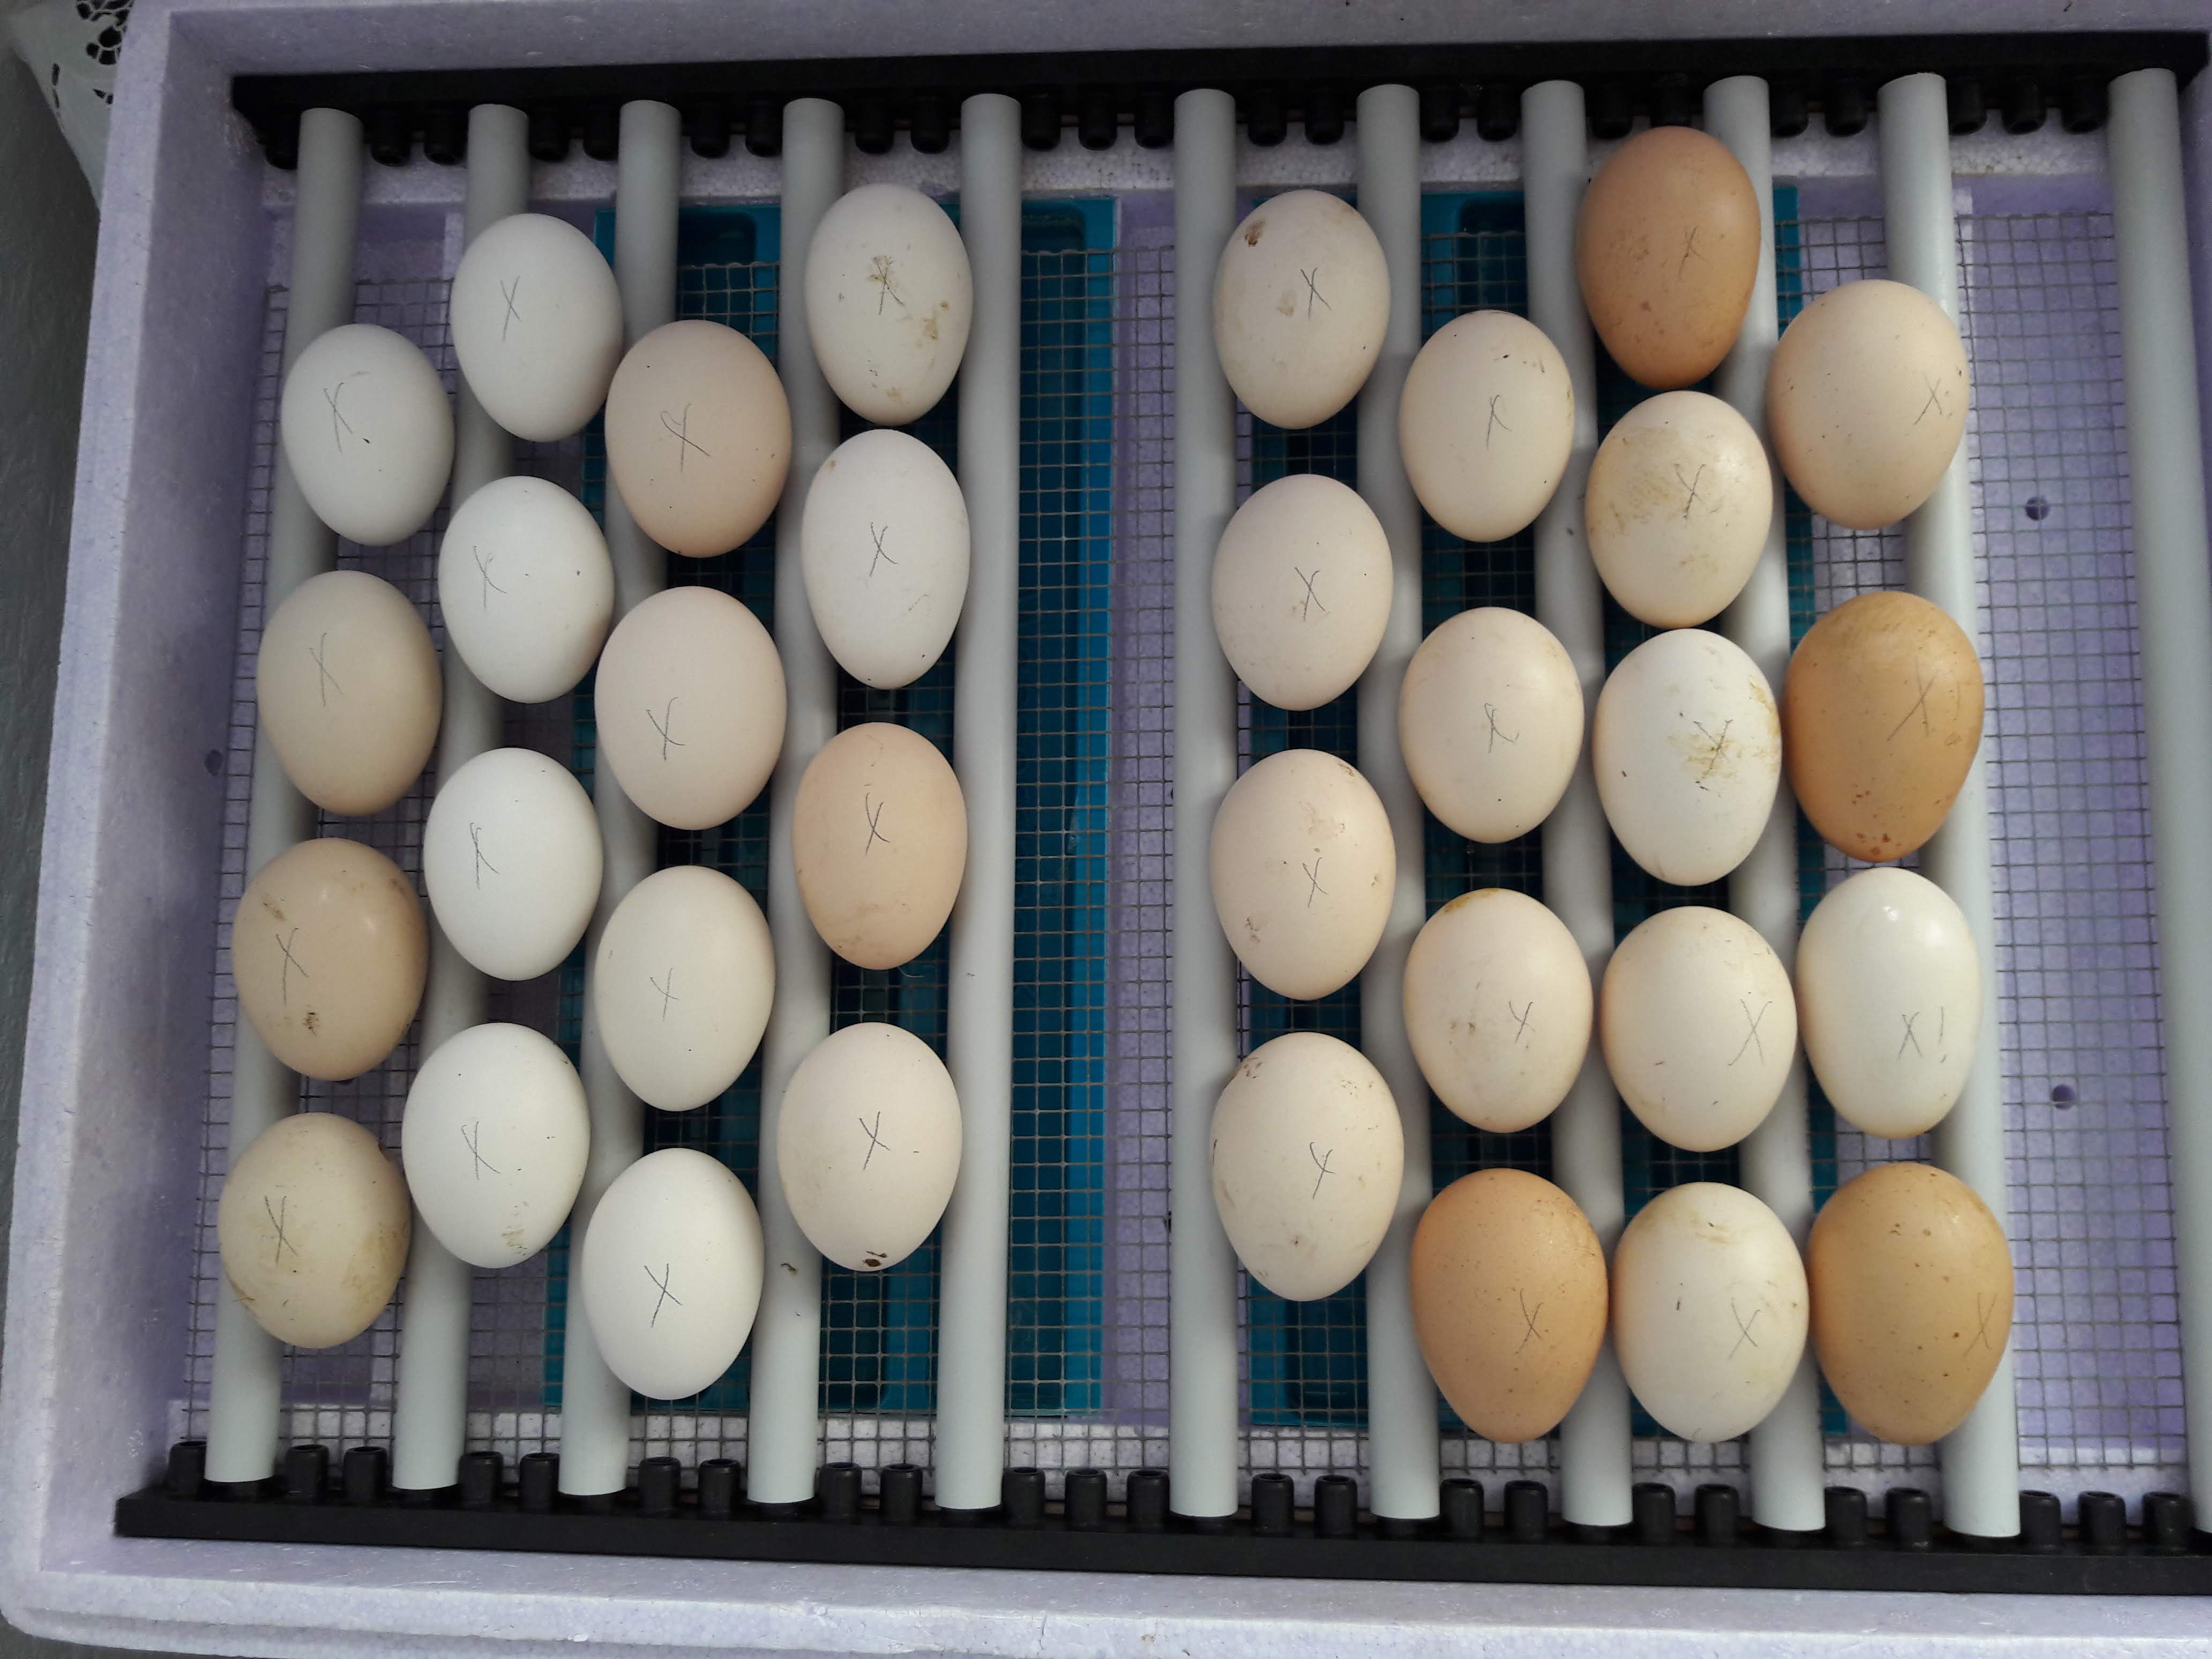 Am 20. Juli hatte ich die Mechelner-Eier in den Brüter gepackt, am 29. die Amrock-Eier dazu. 7 Tage vor Schlupftermin wurden die Mechelner umgepackt in den Schlupfbrüter mit niedrigerer Temperatur.